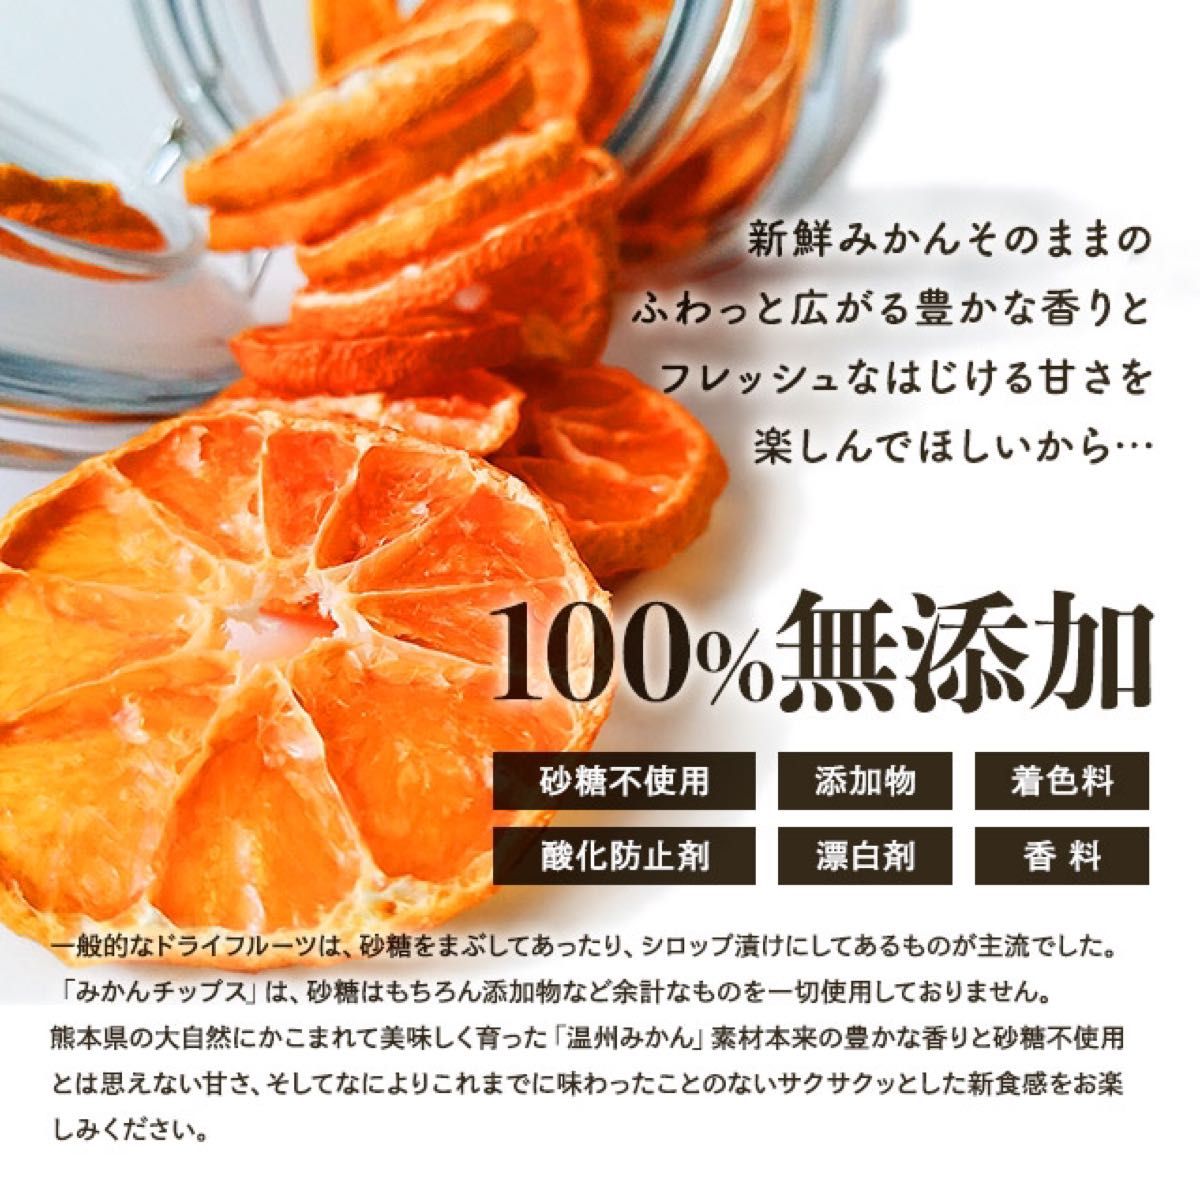 【割れ】新品 国産 ドライフルーツ みかんチップス 30g 無添加 砂糖不使用